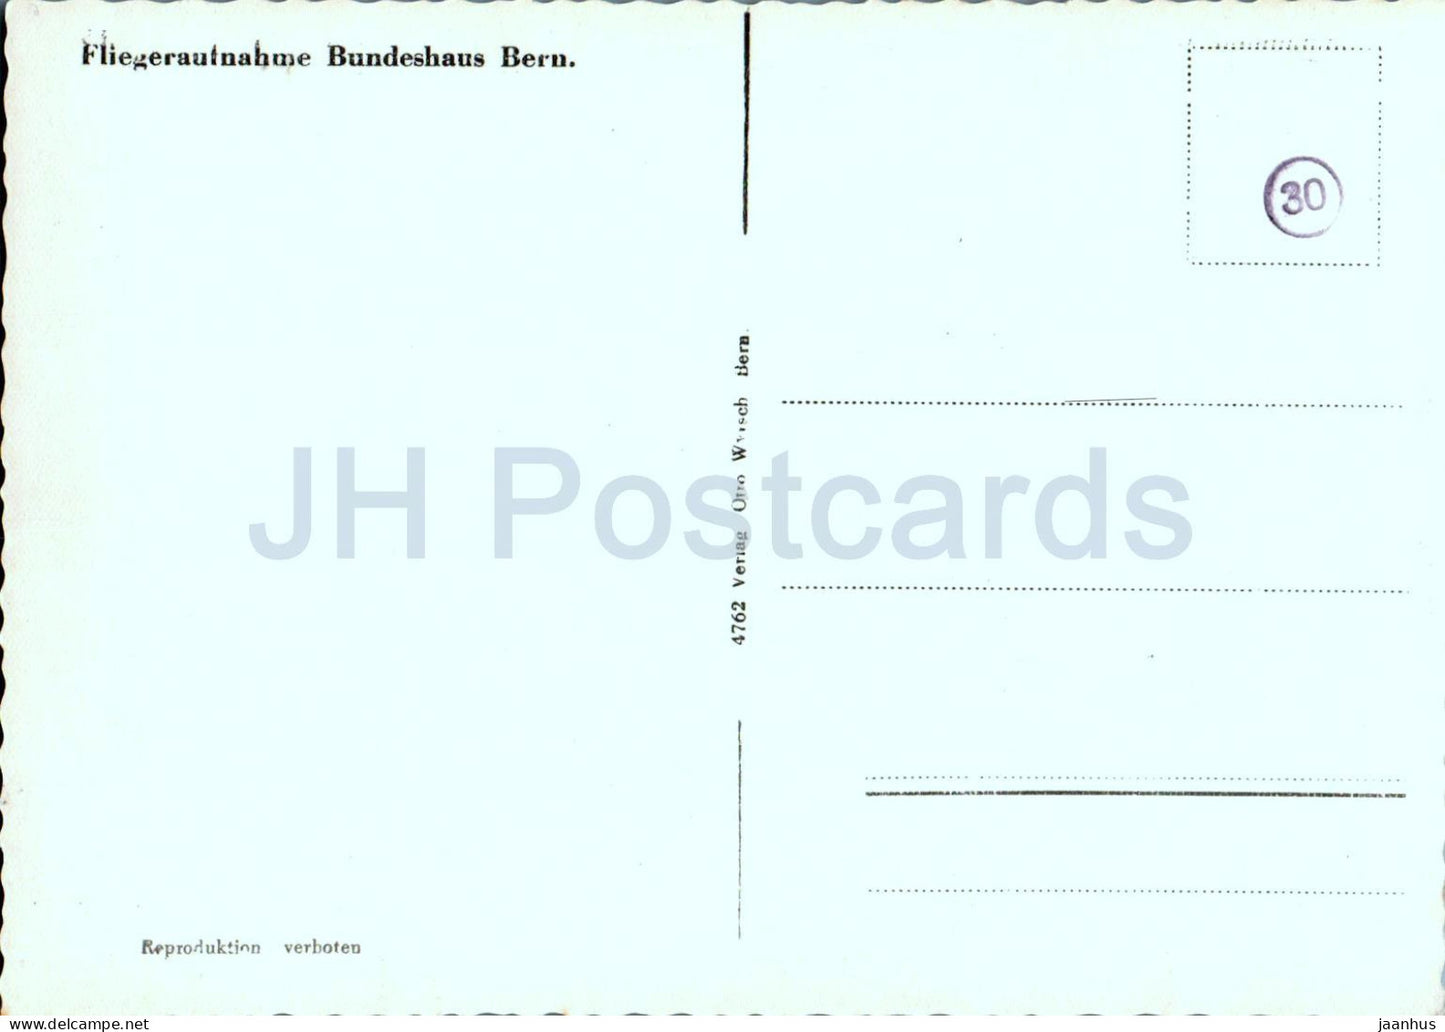 Bern - Bern - Fliegeraufnahme Bundeshaus Bern - 4762 - alte Postkarte - Schweiz - ungebraucht 